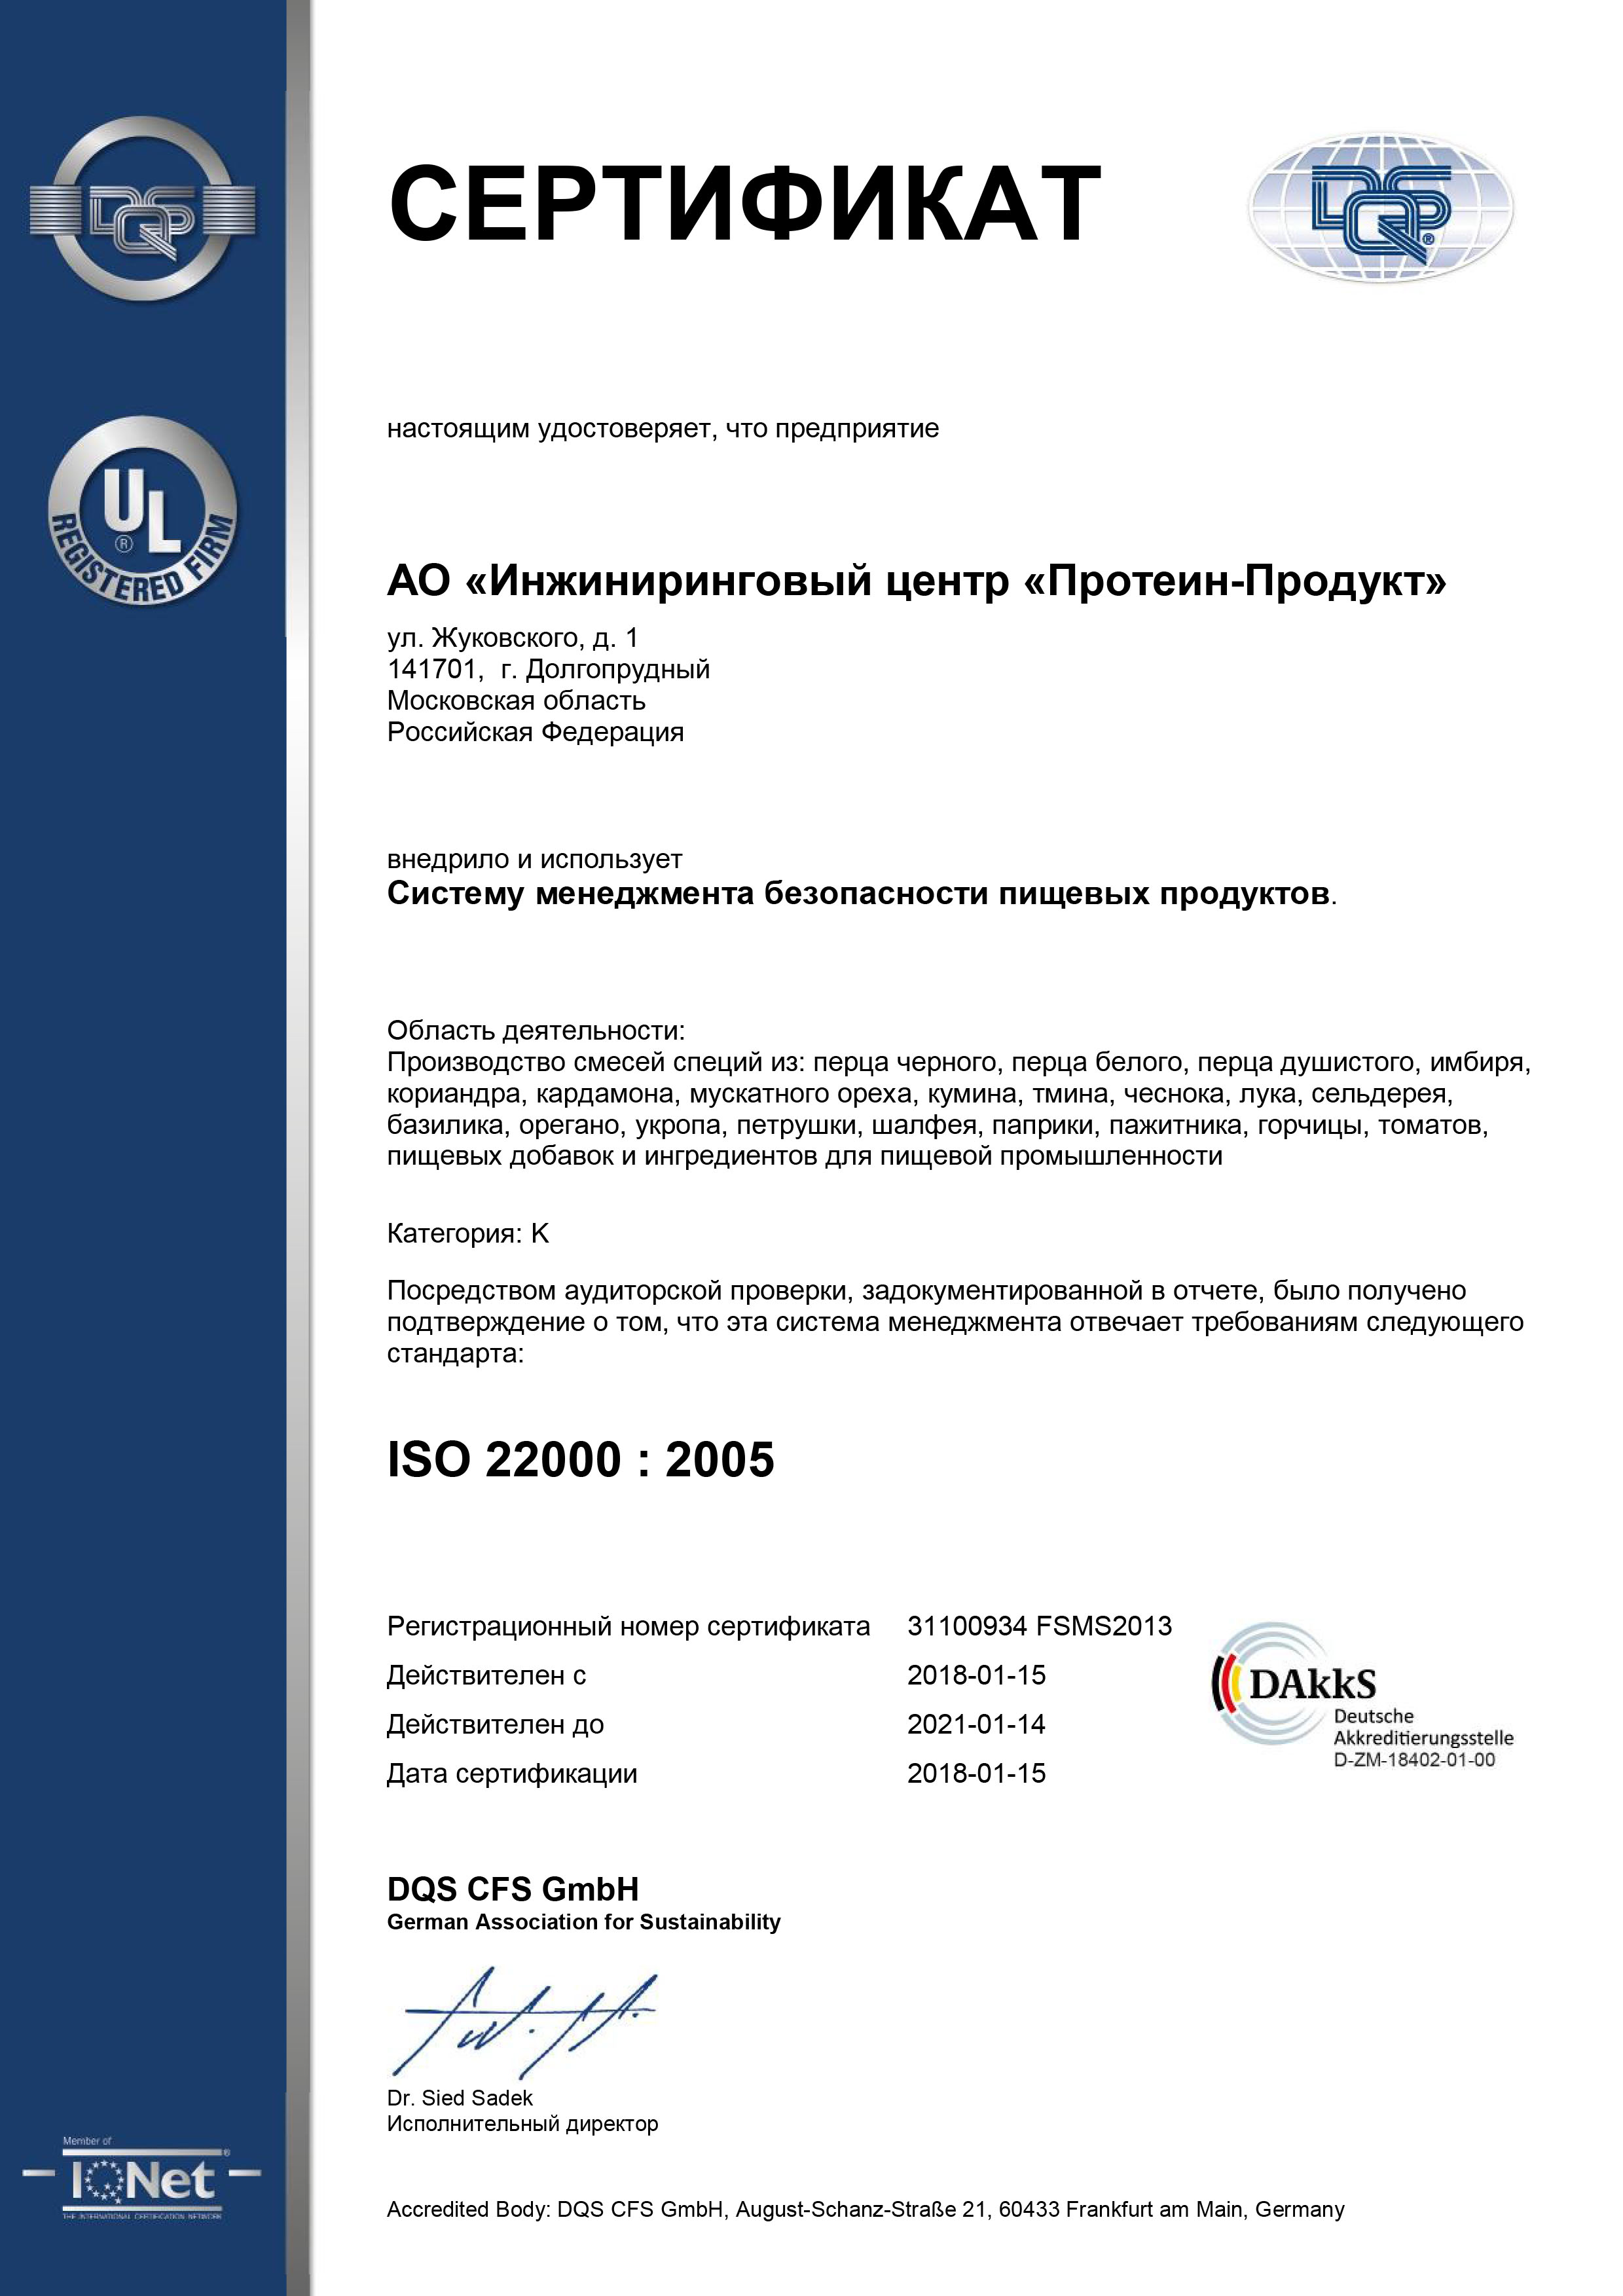 Сертификация номеров. Завод катализаторов Новокуйбышевск. Сертификат ISO 22000. Международный сертификат ISO 9001. DQS сертификат.